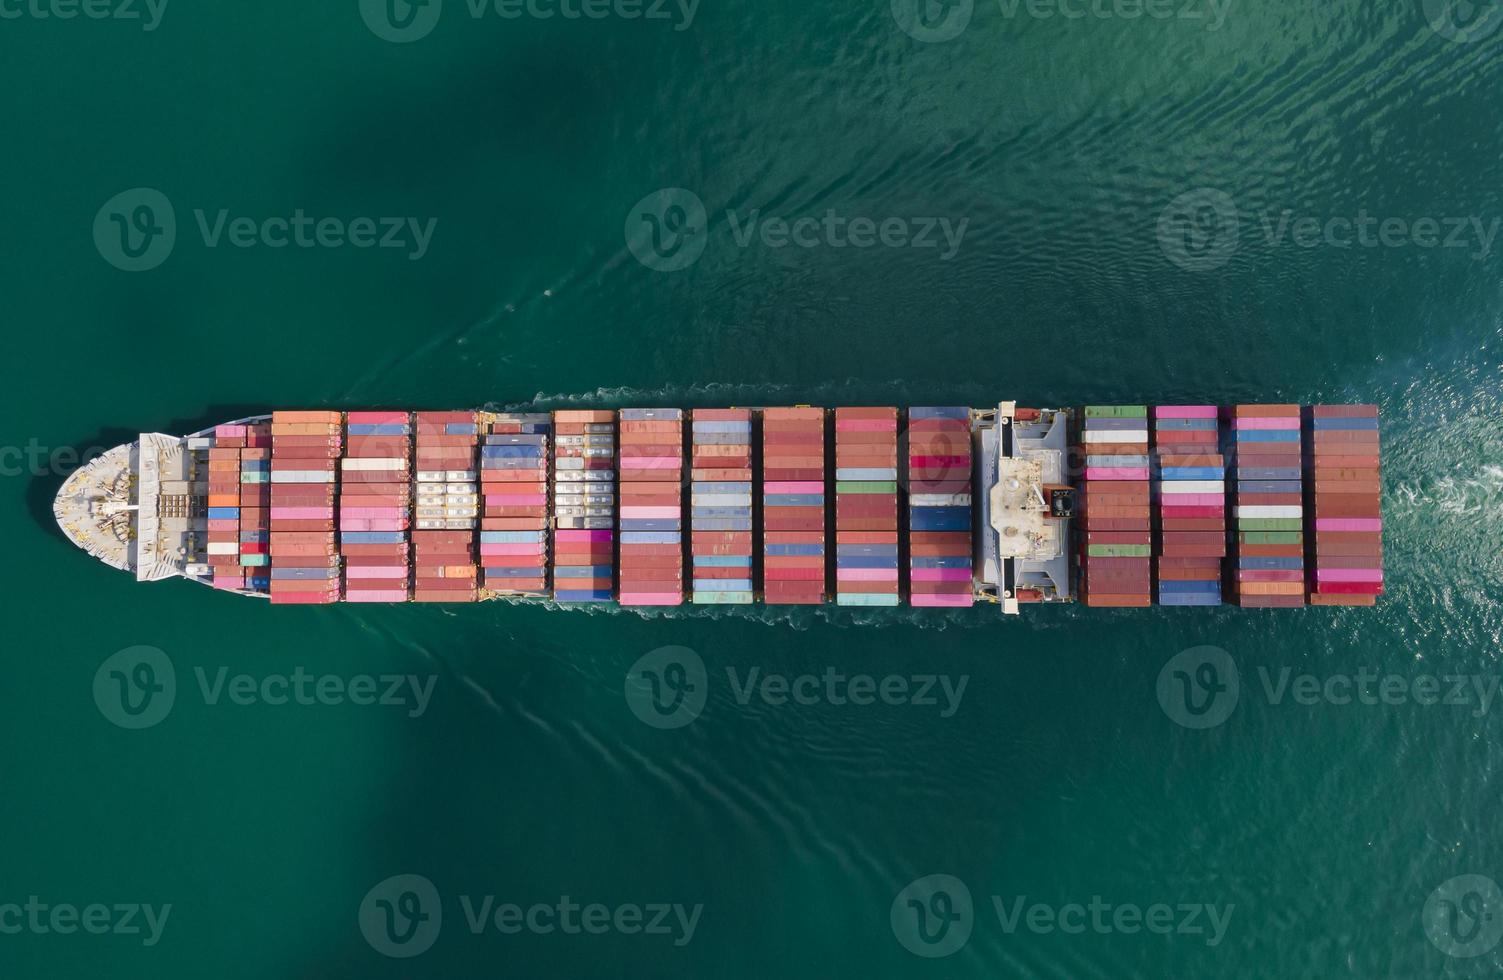 logística de navios de carga de contêineres e transporte de negócios de exportação de importação de navios foto